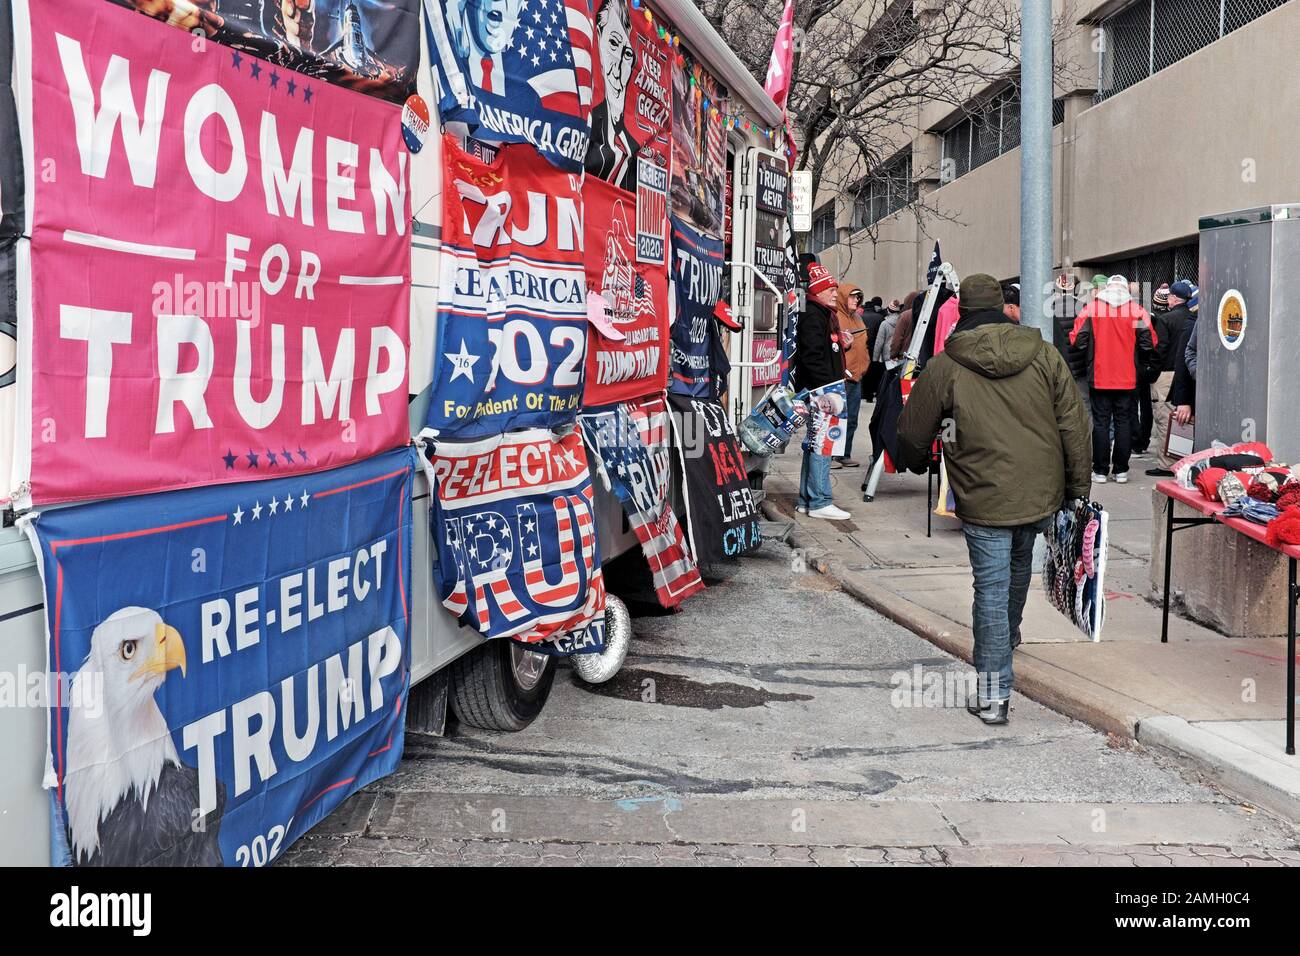 Un bus couvert d'affiches et de bannières politiques soutenant Trump est stationné à Tolède, Ohio, États-Unis lors d'une visite du président le 9 janvier 2020. Banque D'Images